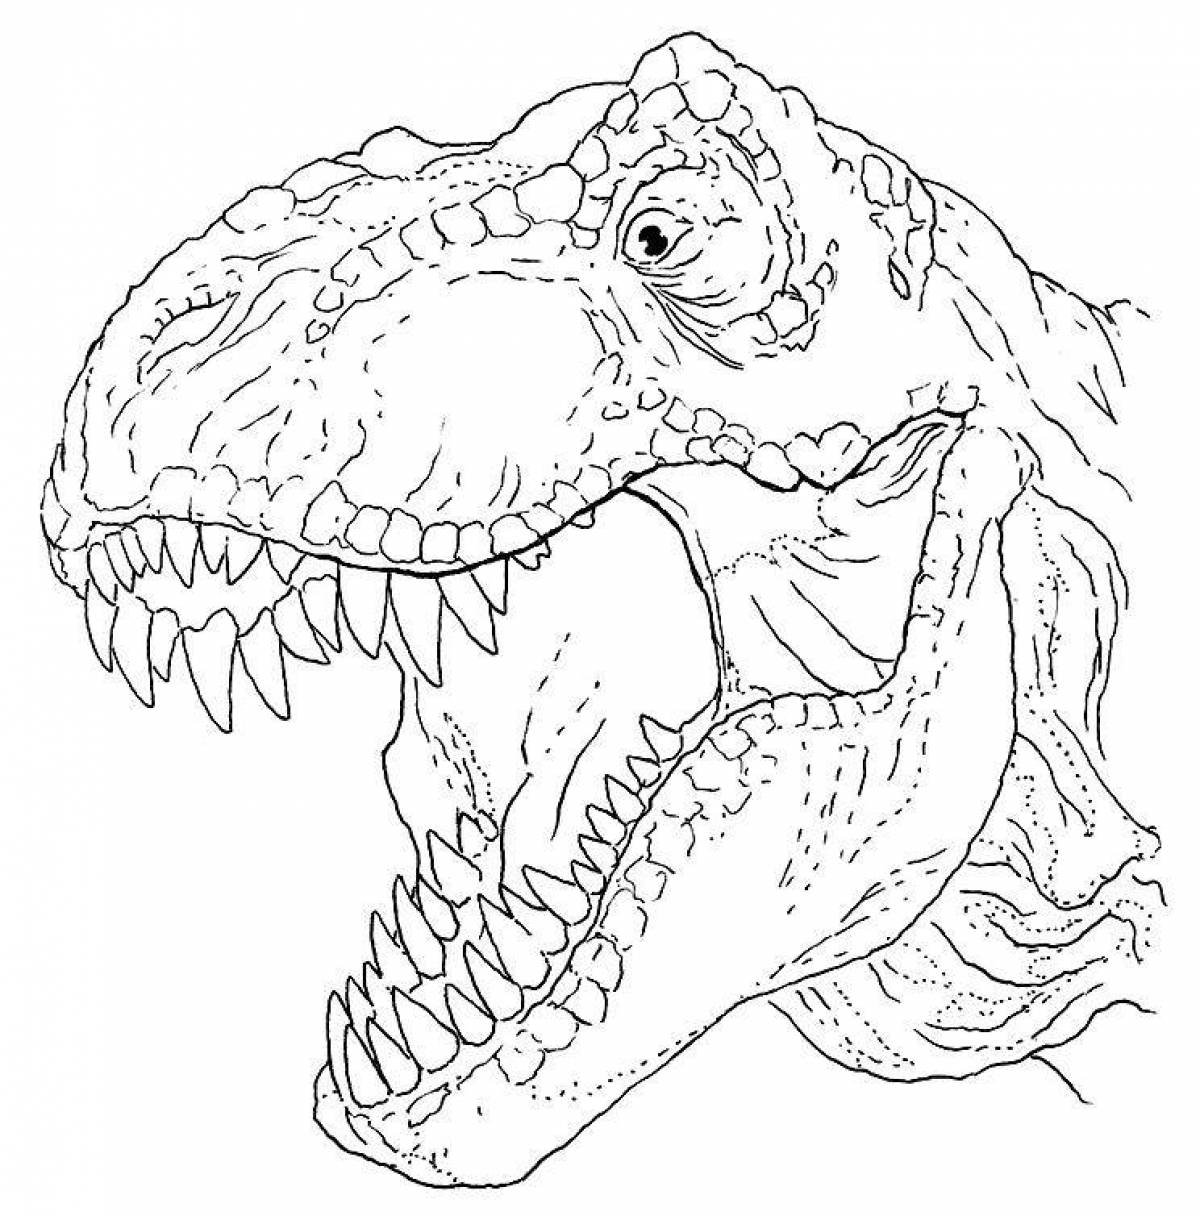 Artistic Tarbosaurus coloring book